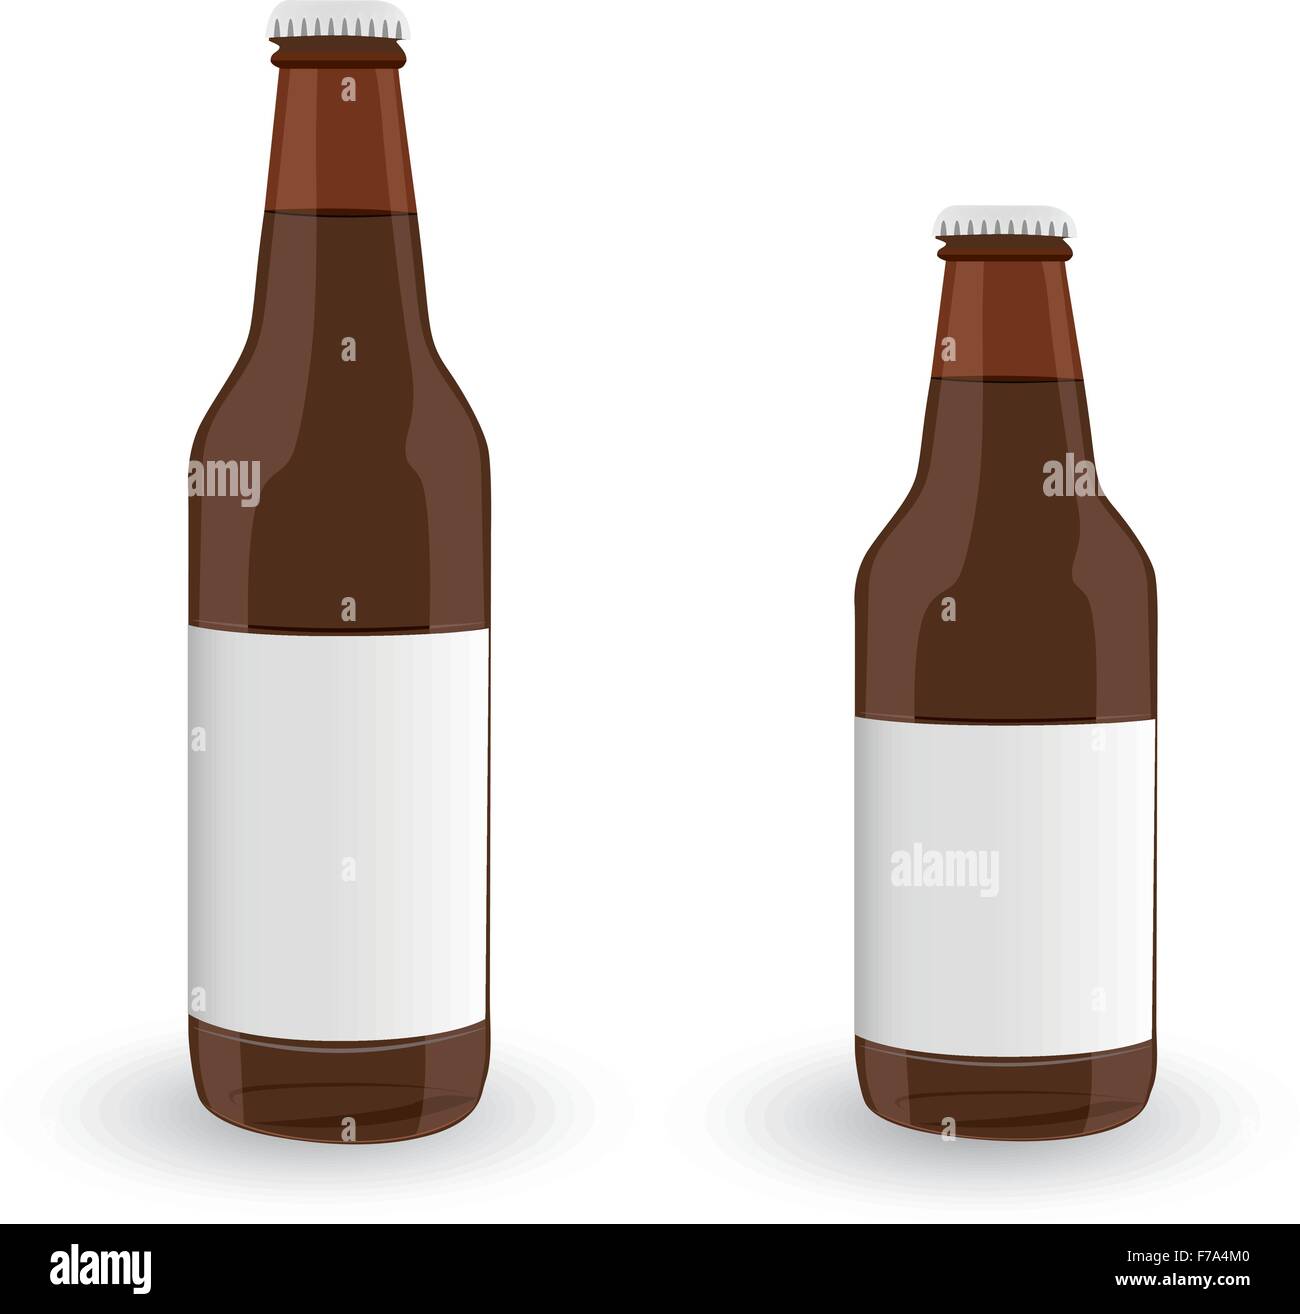 Les bouteilles de bière en verre brun foncé sur fond blanc isolé. Vector EPS10 Illustration de Vecteur